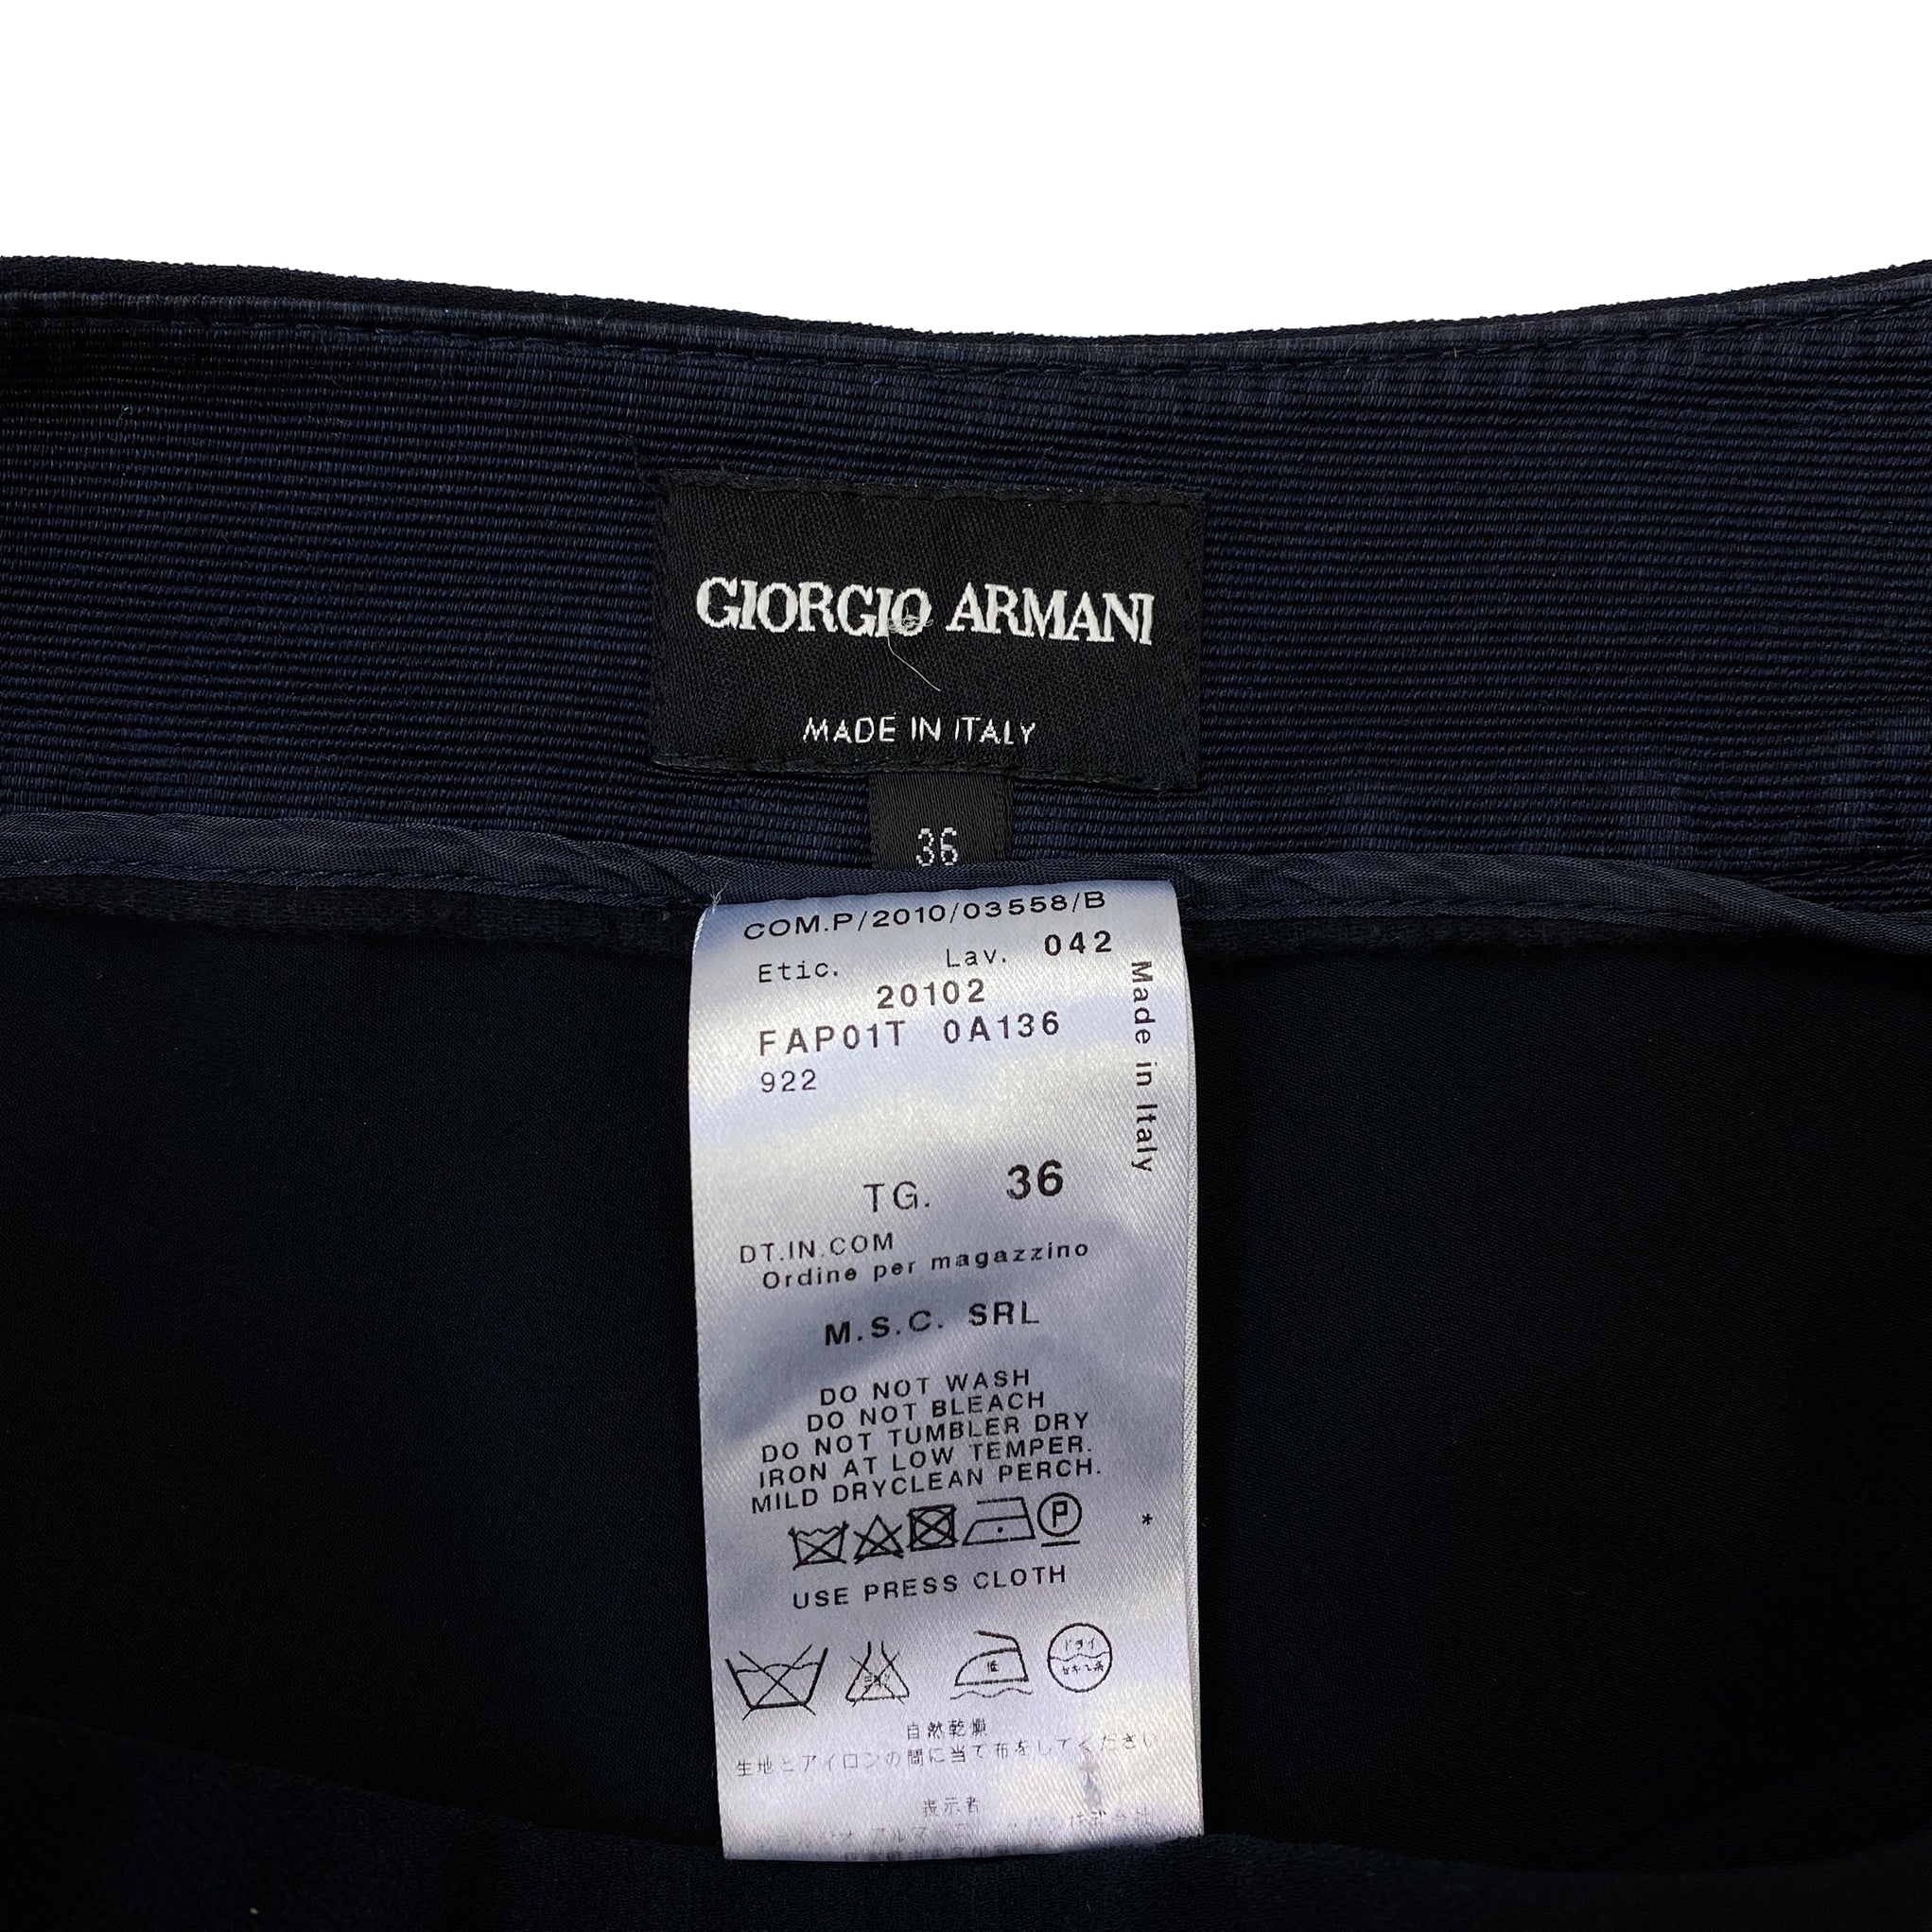 Giorgio Armani Black Trousers